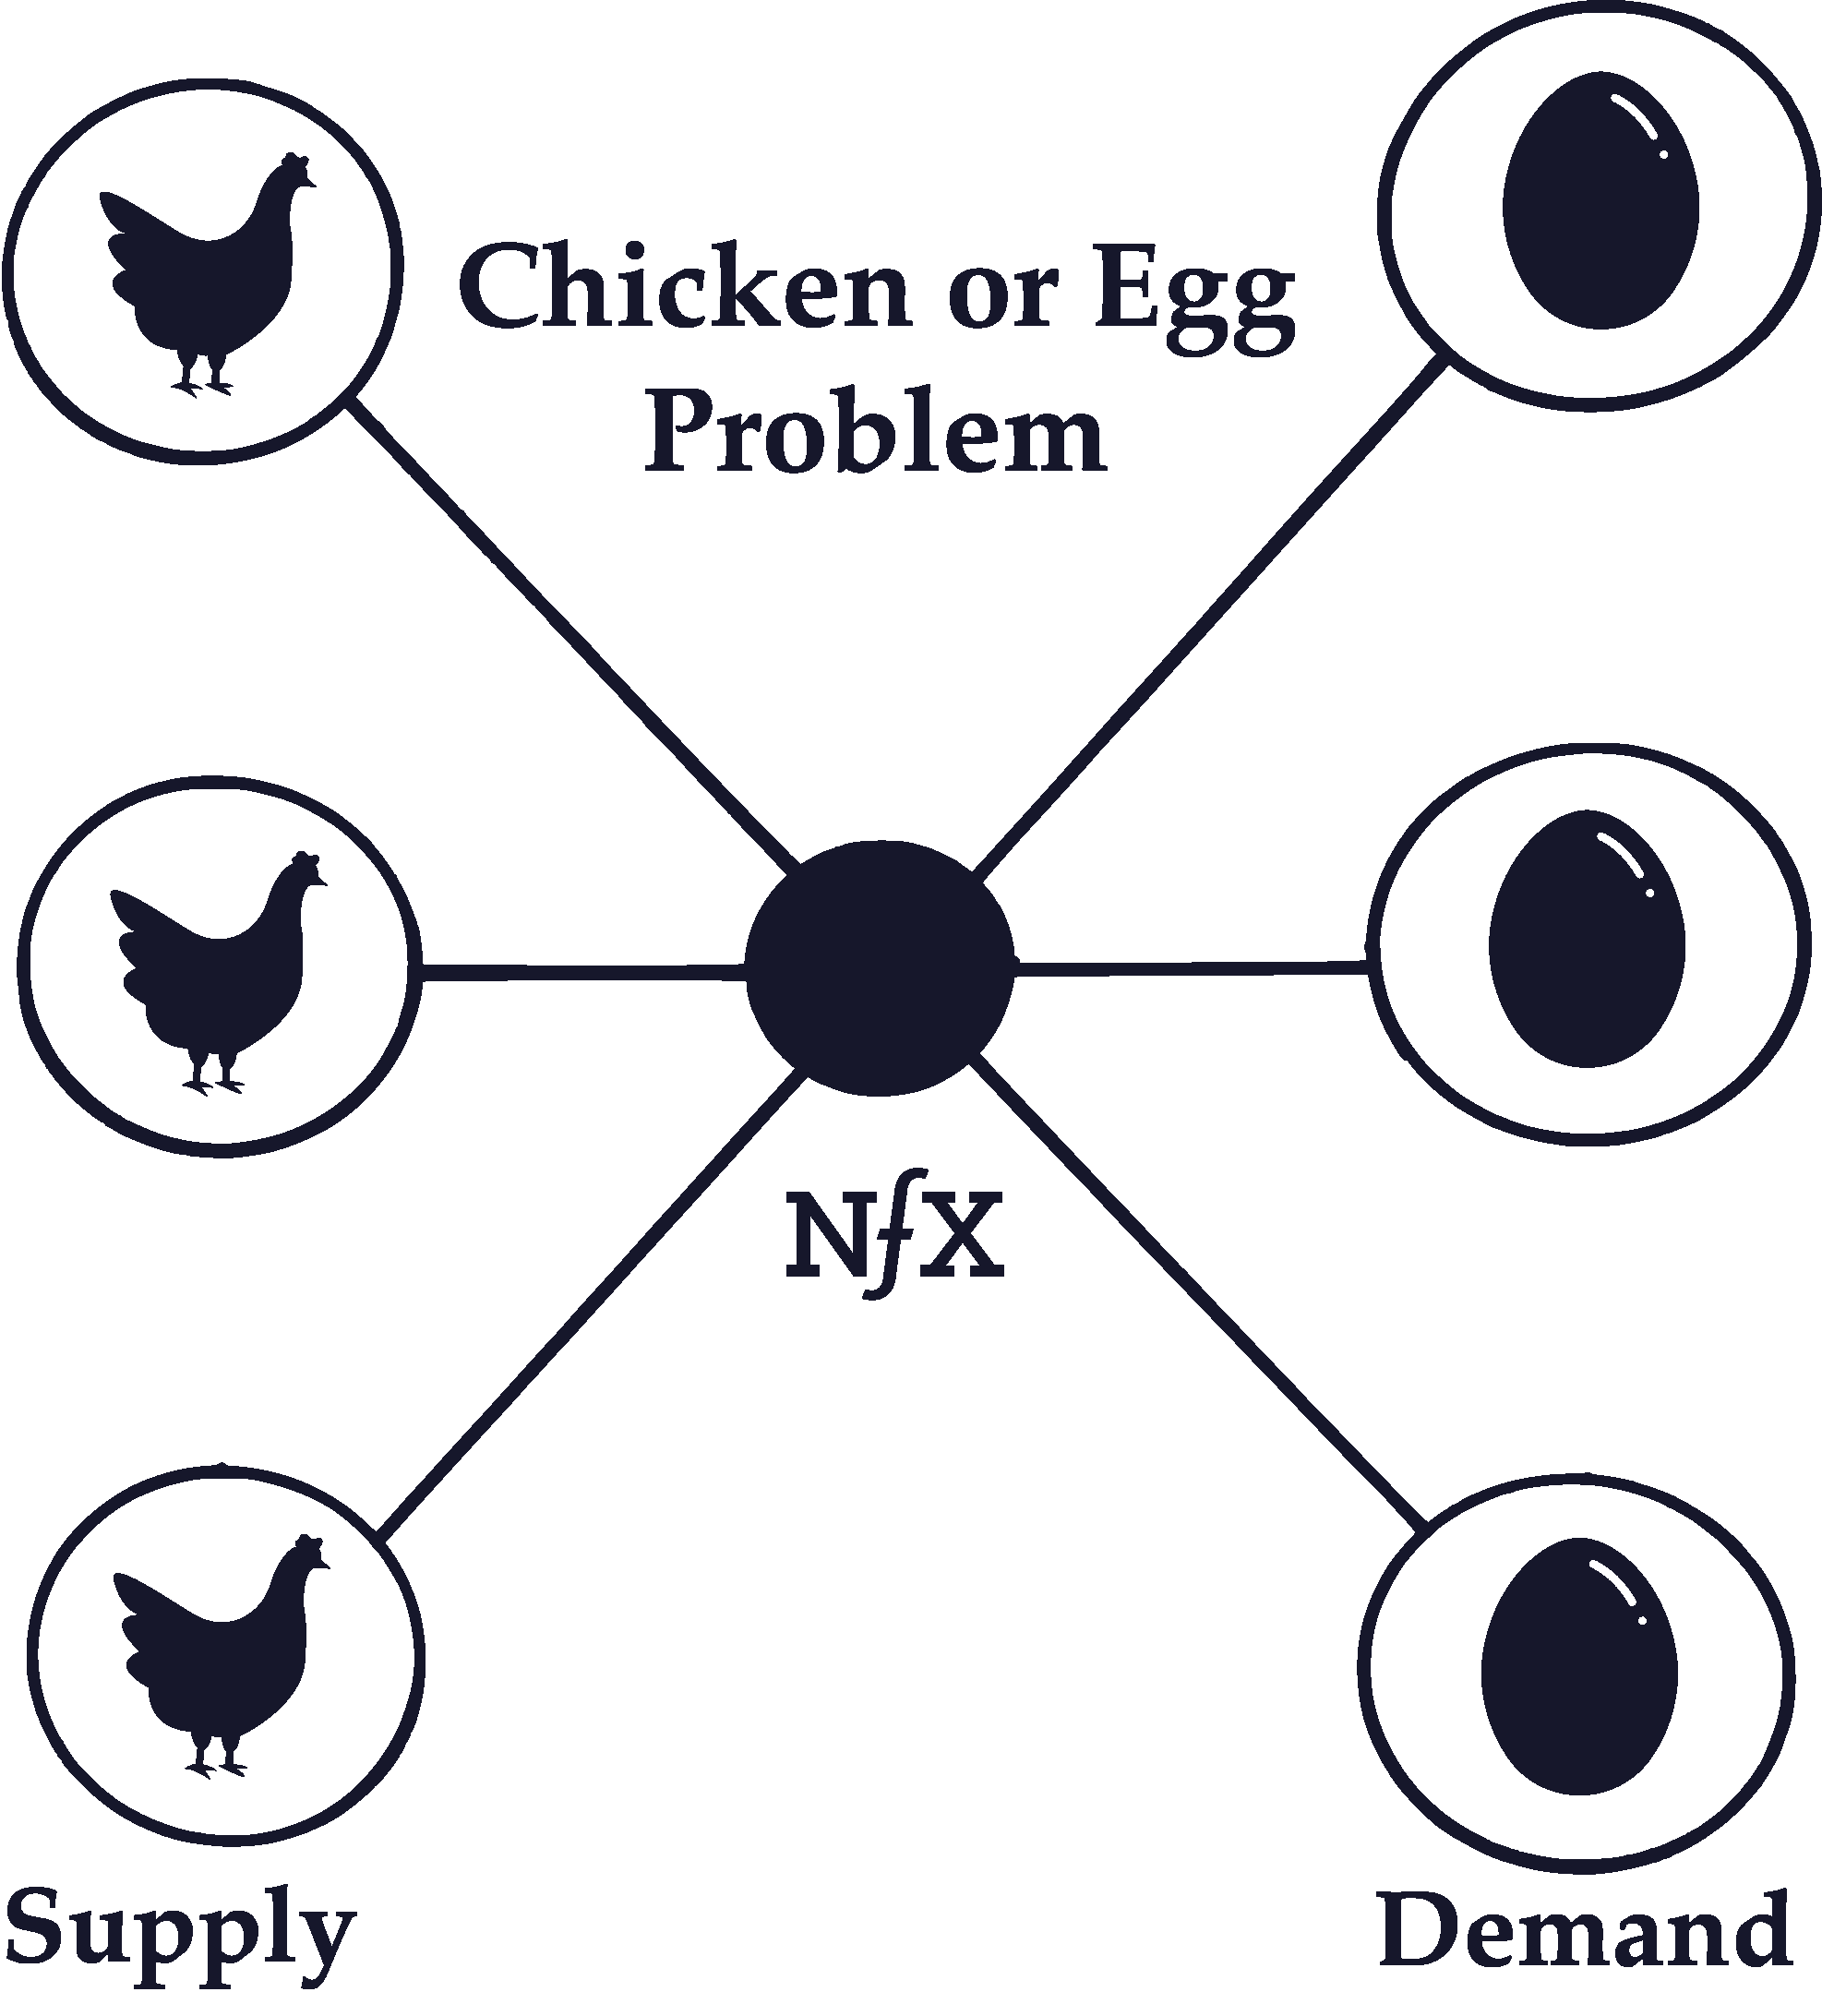 Chicken or Egg Problem (Cold Start Problem)